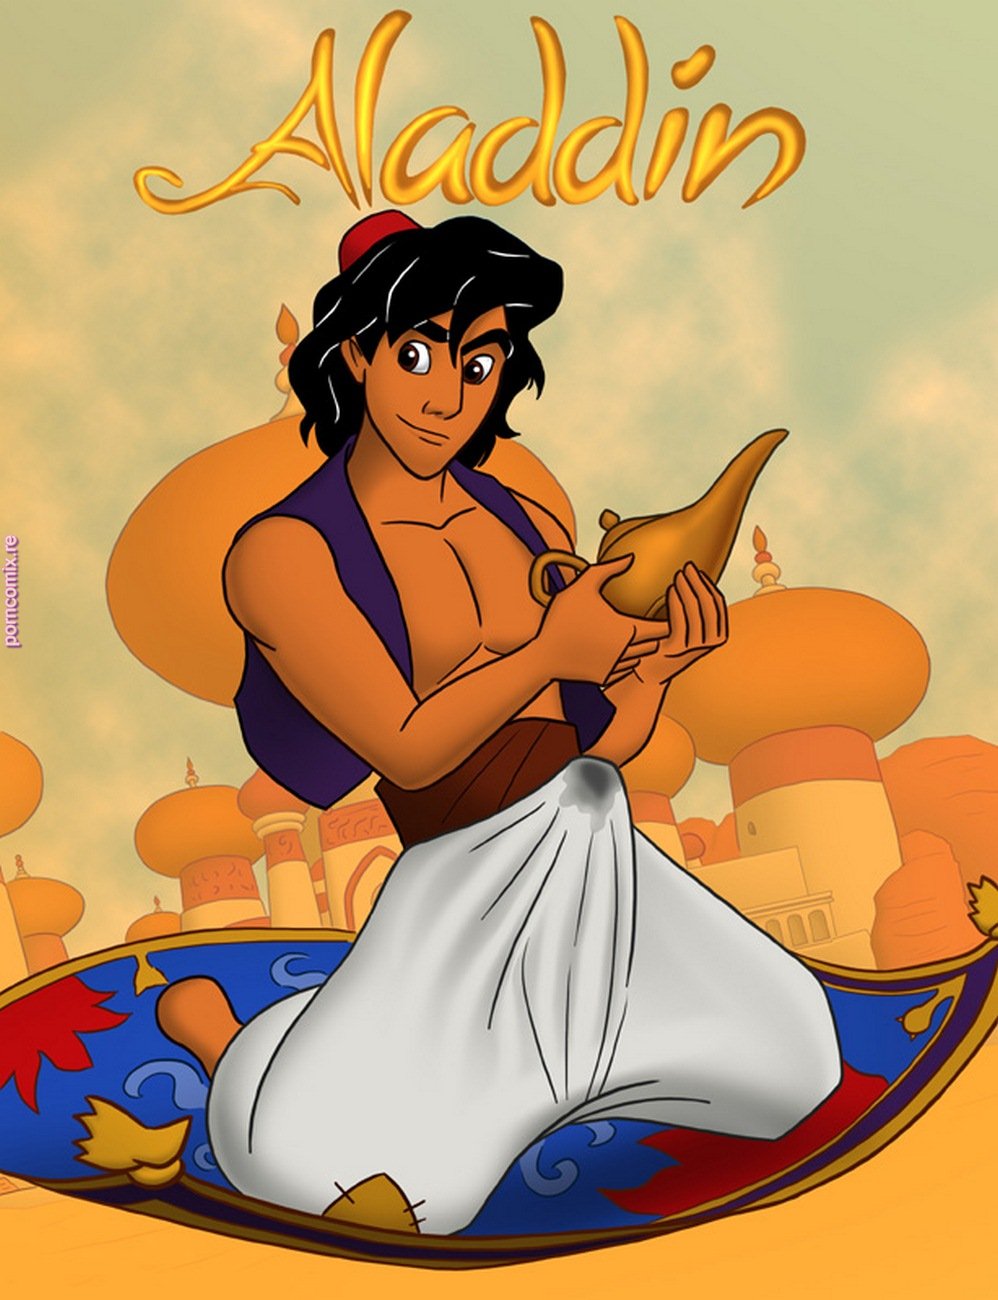 998px x 1300px - Aladdin- Disney Sex Adventures ~ Series - Porn Cartoon Comics